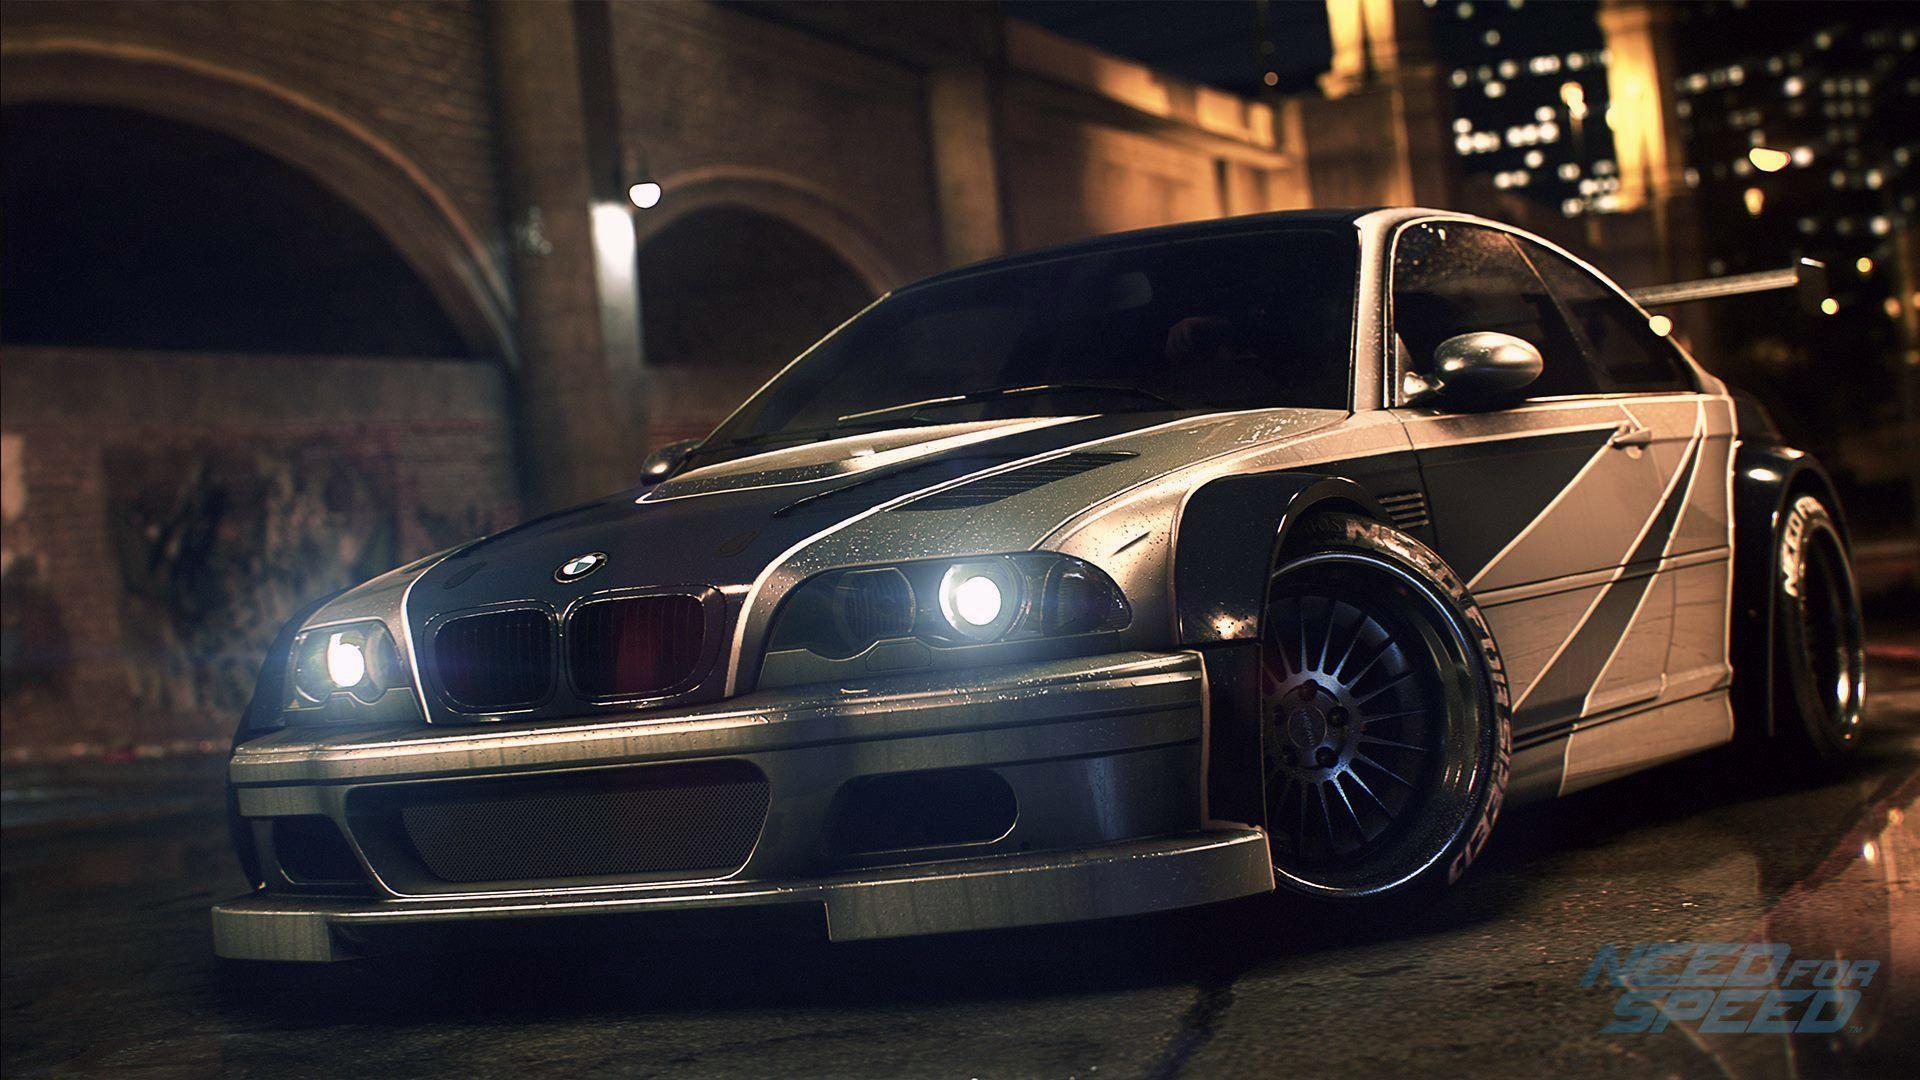 BMW M3 GTR | Need for Speed Wiki | Fandom